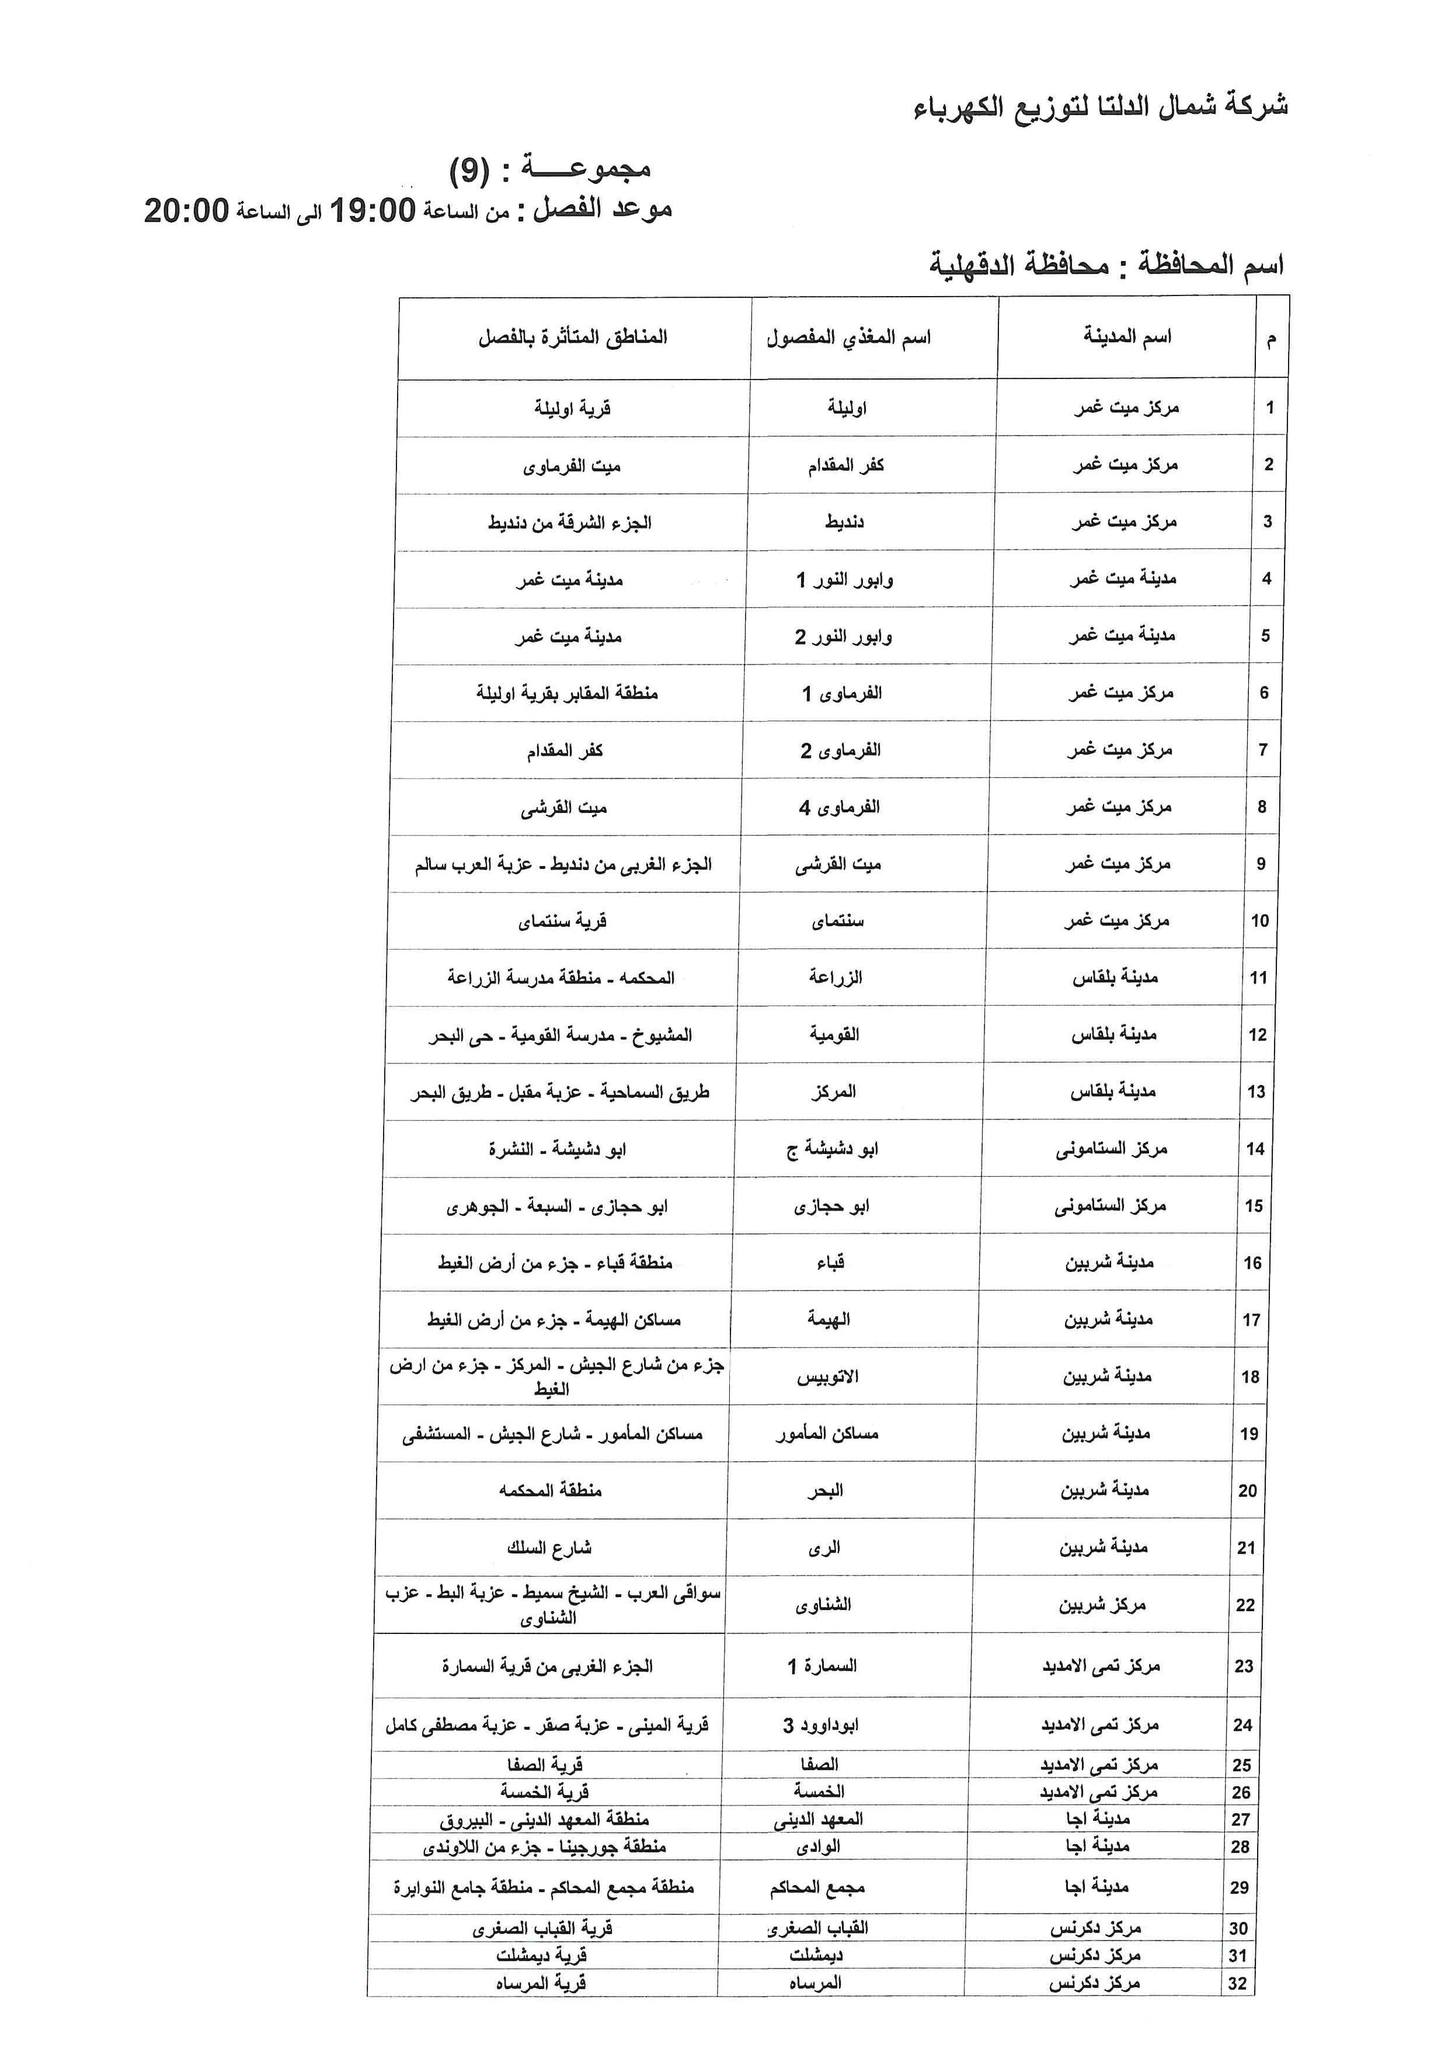 الإعلان عن خطة تخفيف أحمال الكهرباء فى محافظة الدقهلية 16